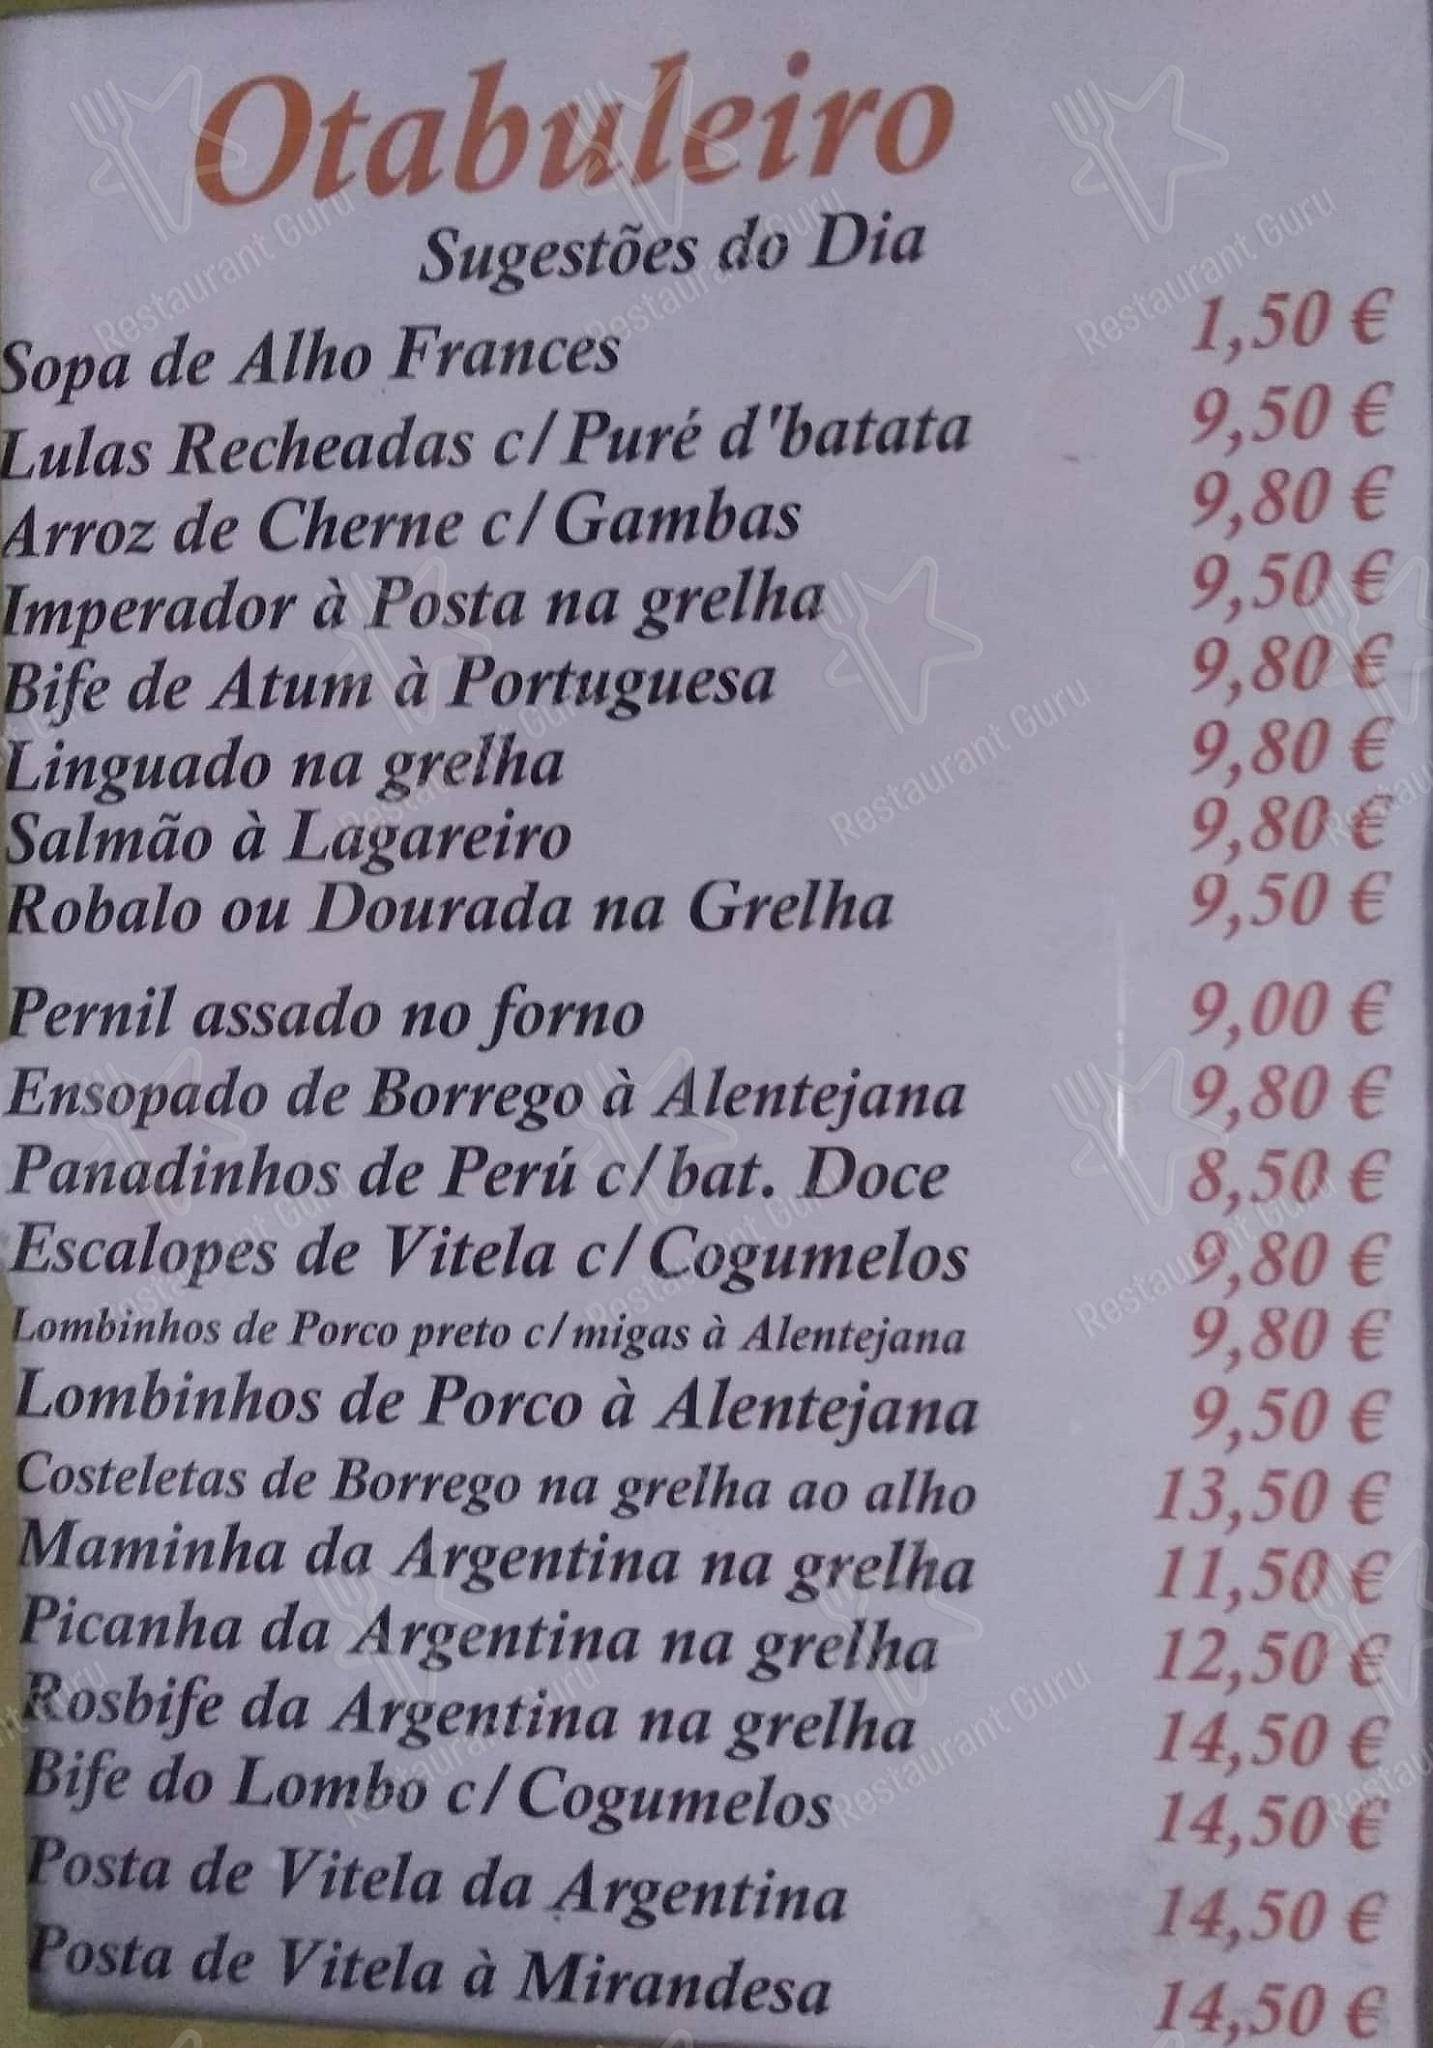 O Tabuleiro, Lisboa - Cardápio, preços, avaliação do restaurante